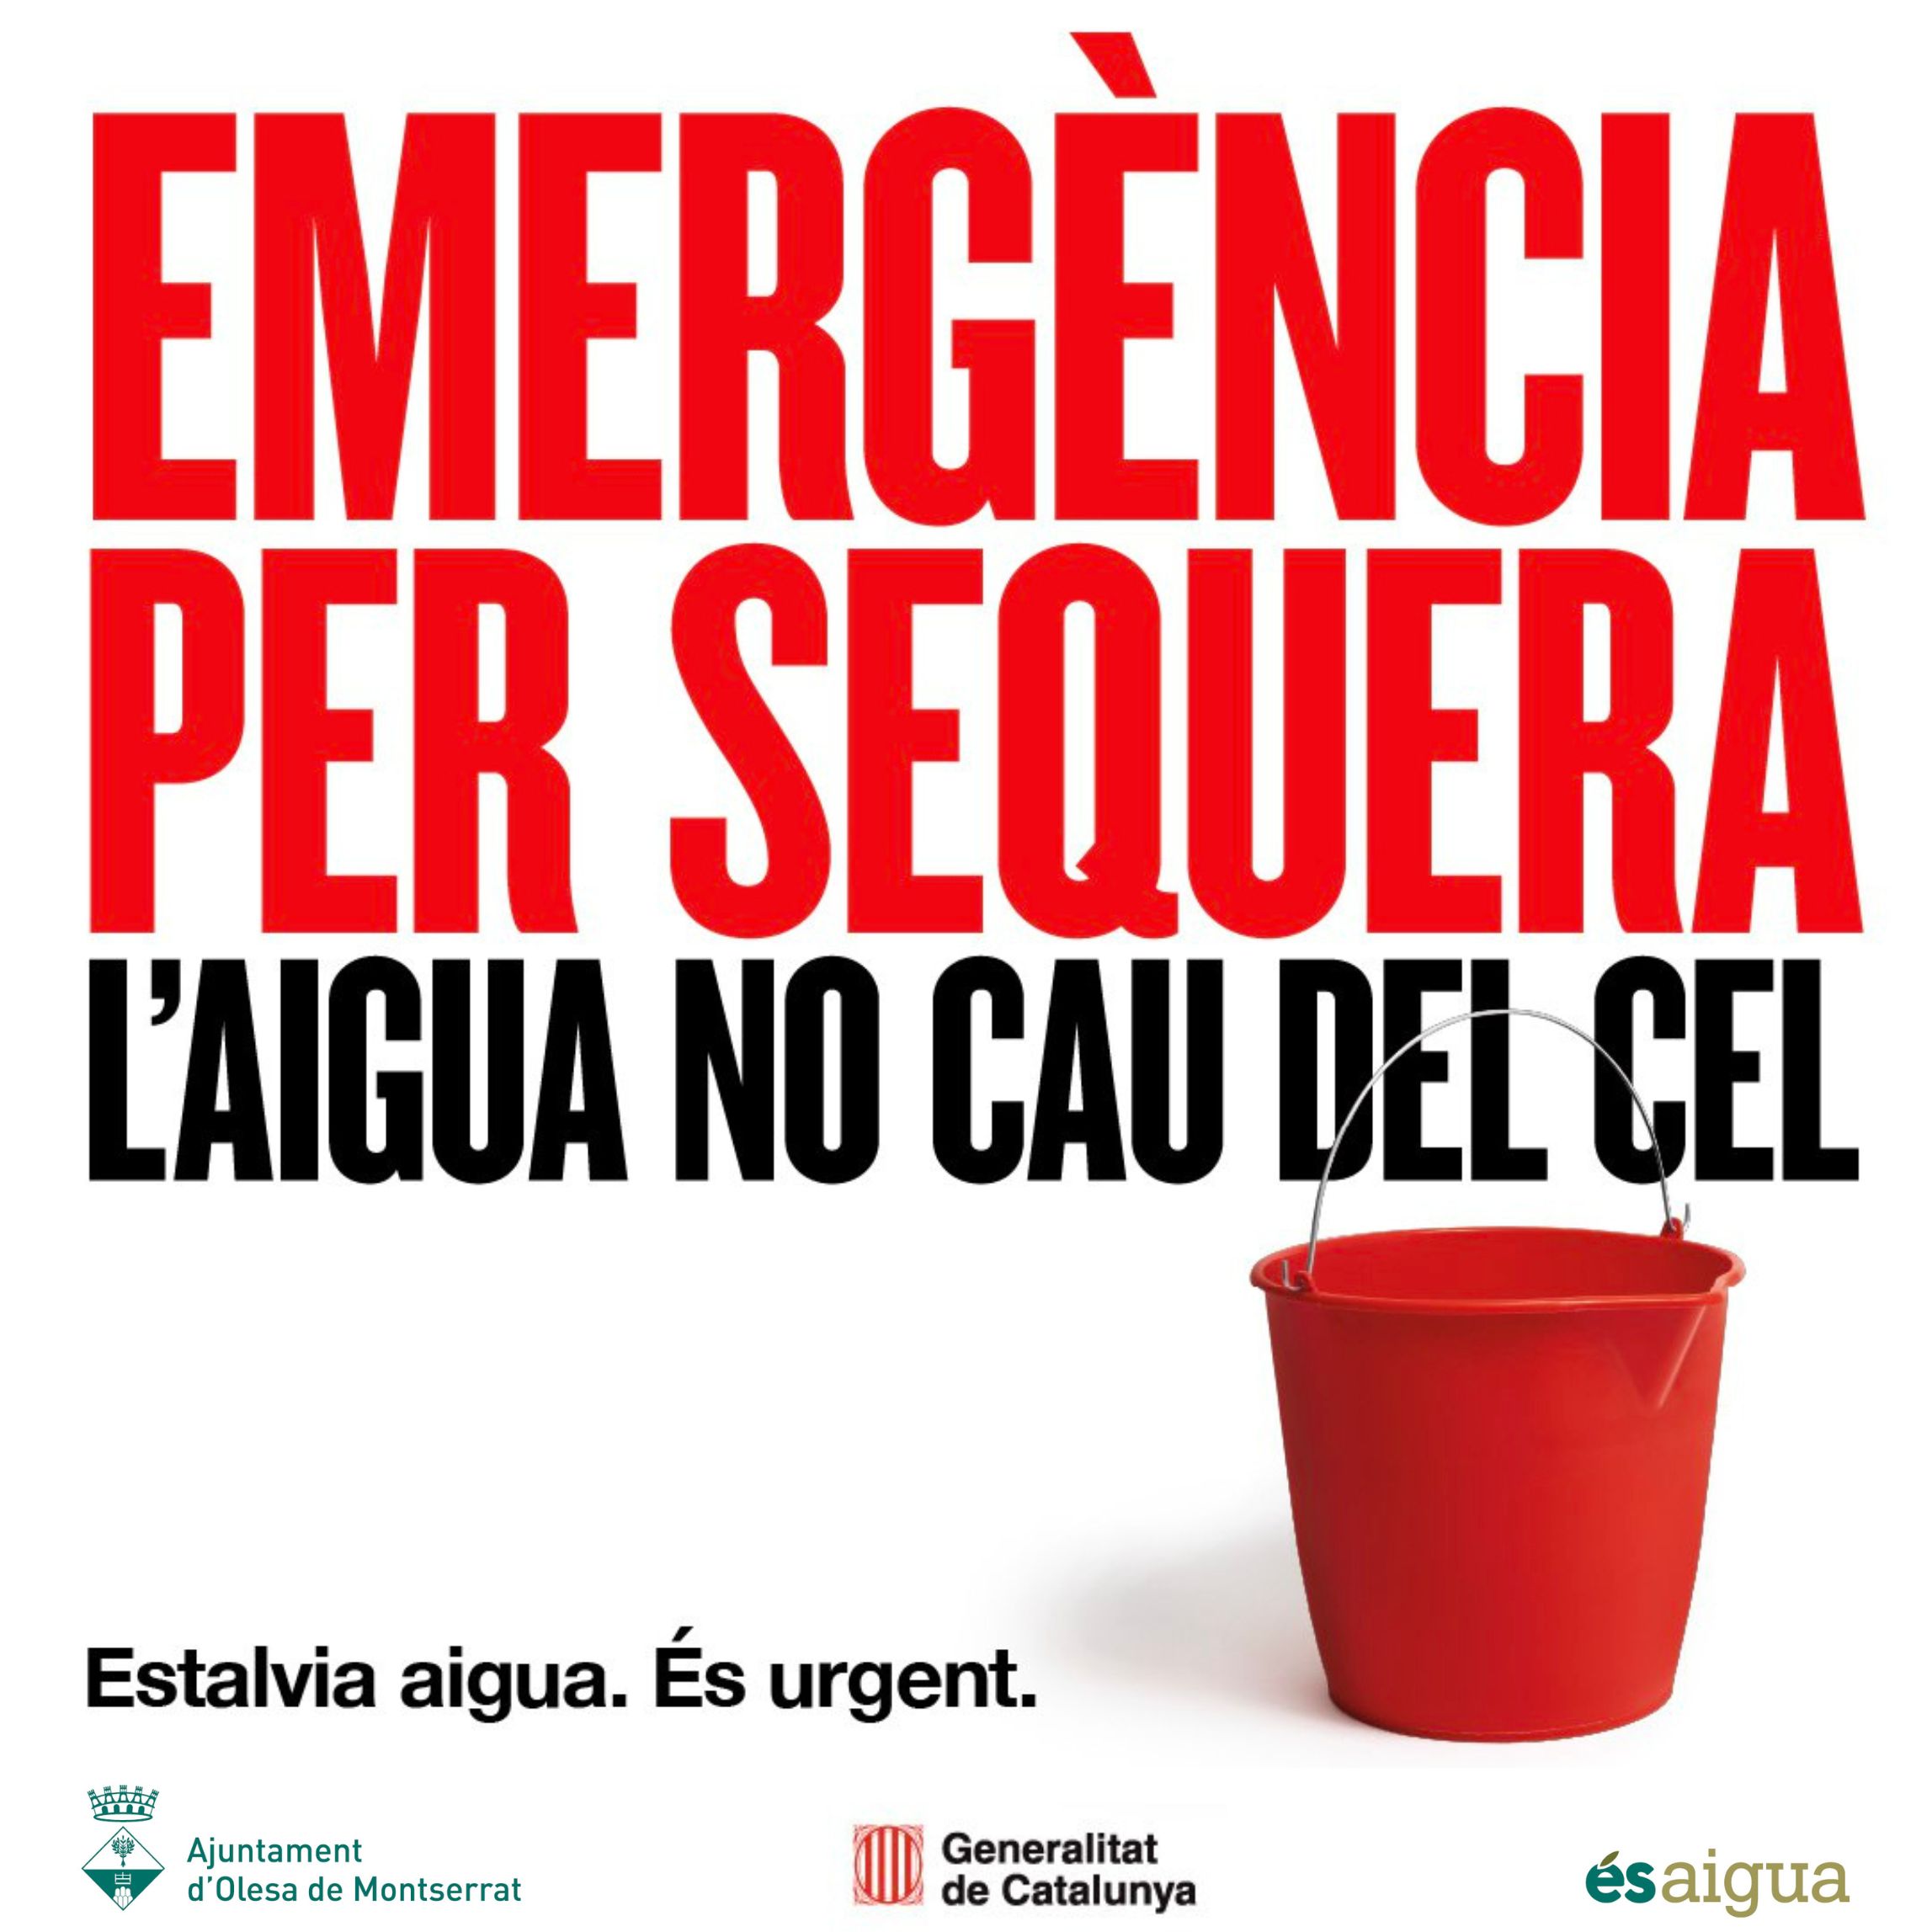 Cartell de la campanya d'estalvi d'aigua per l'emergència per sequera